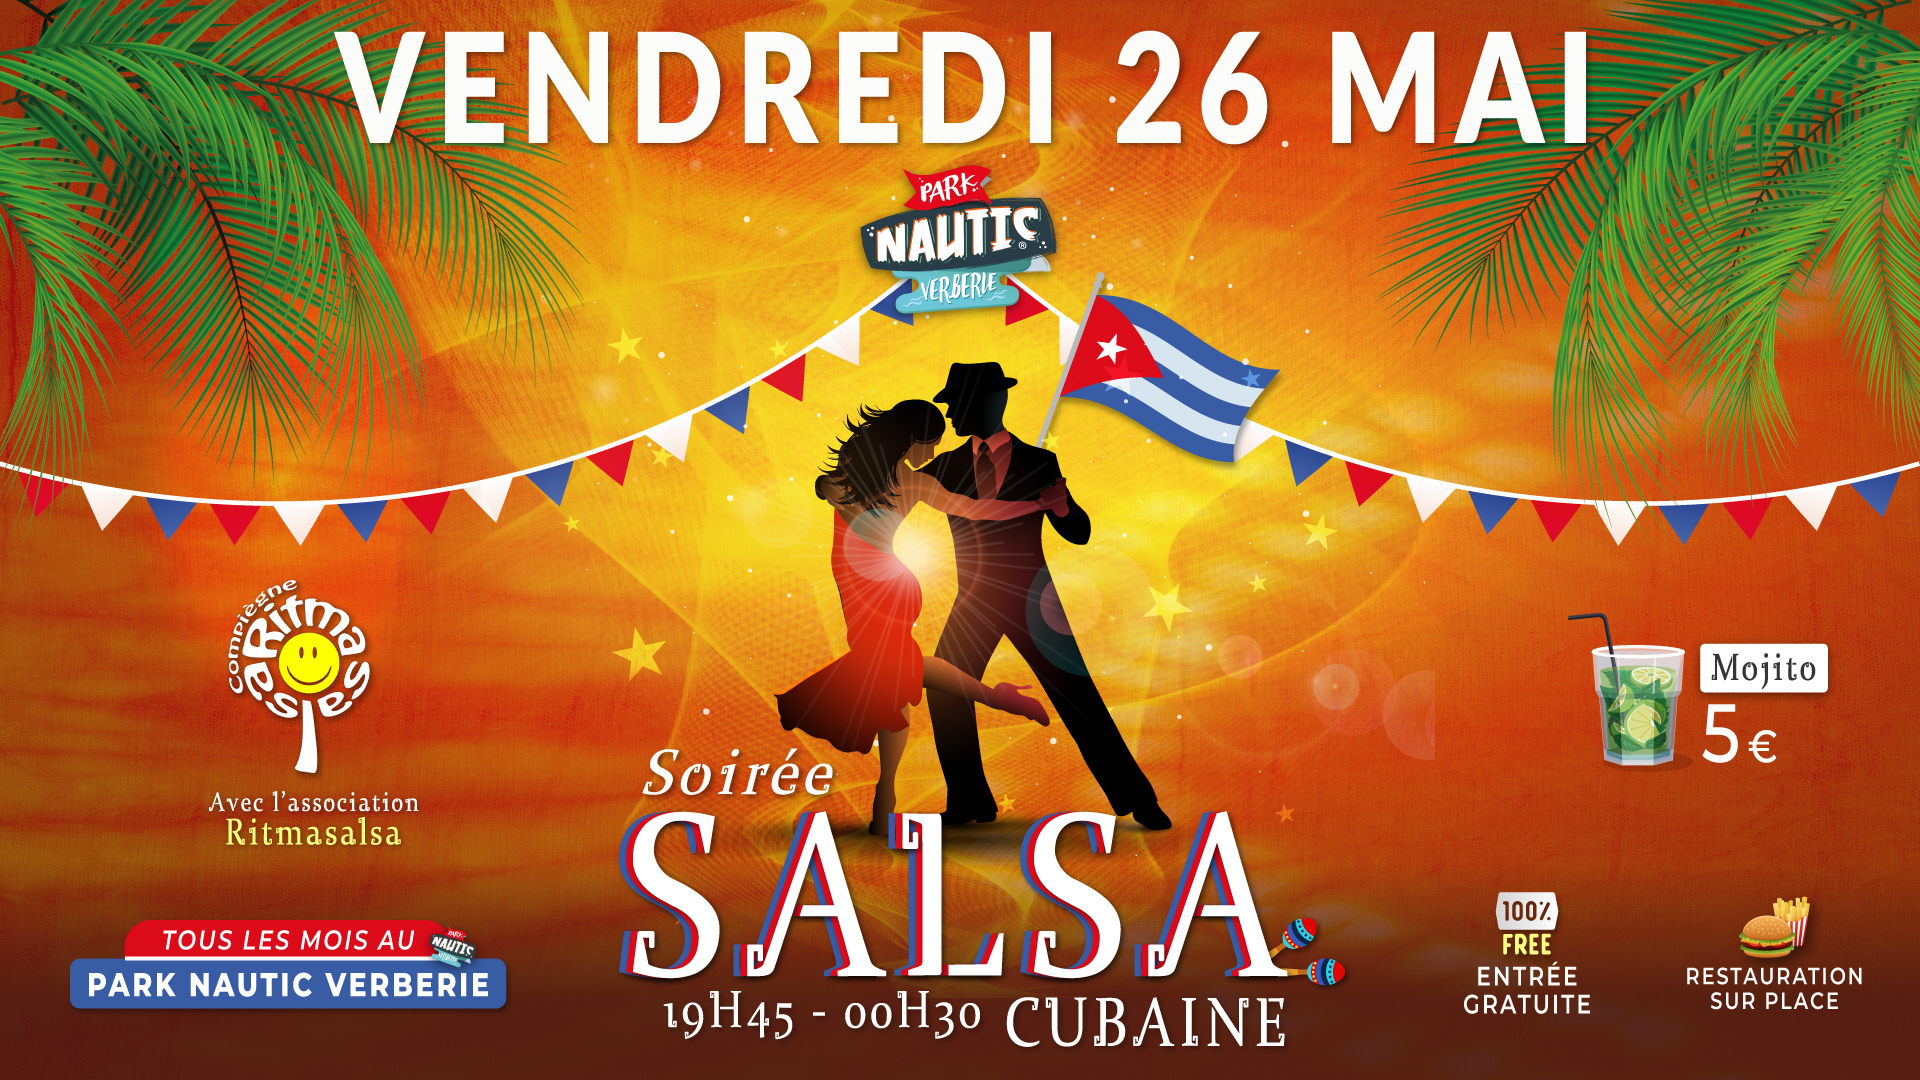 Soirée Salsa cubaine